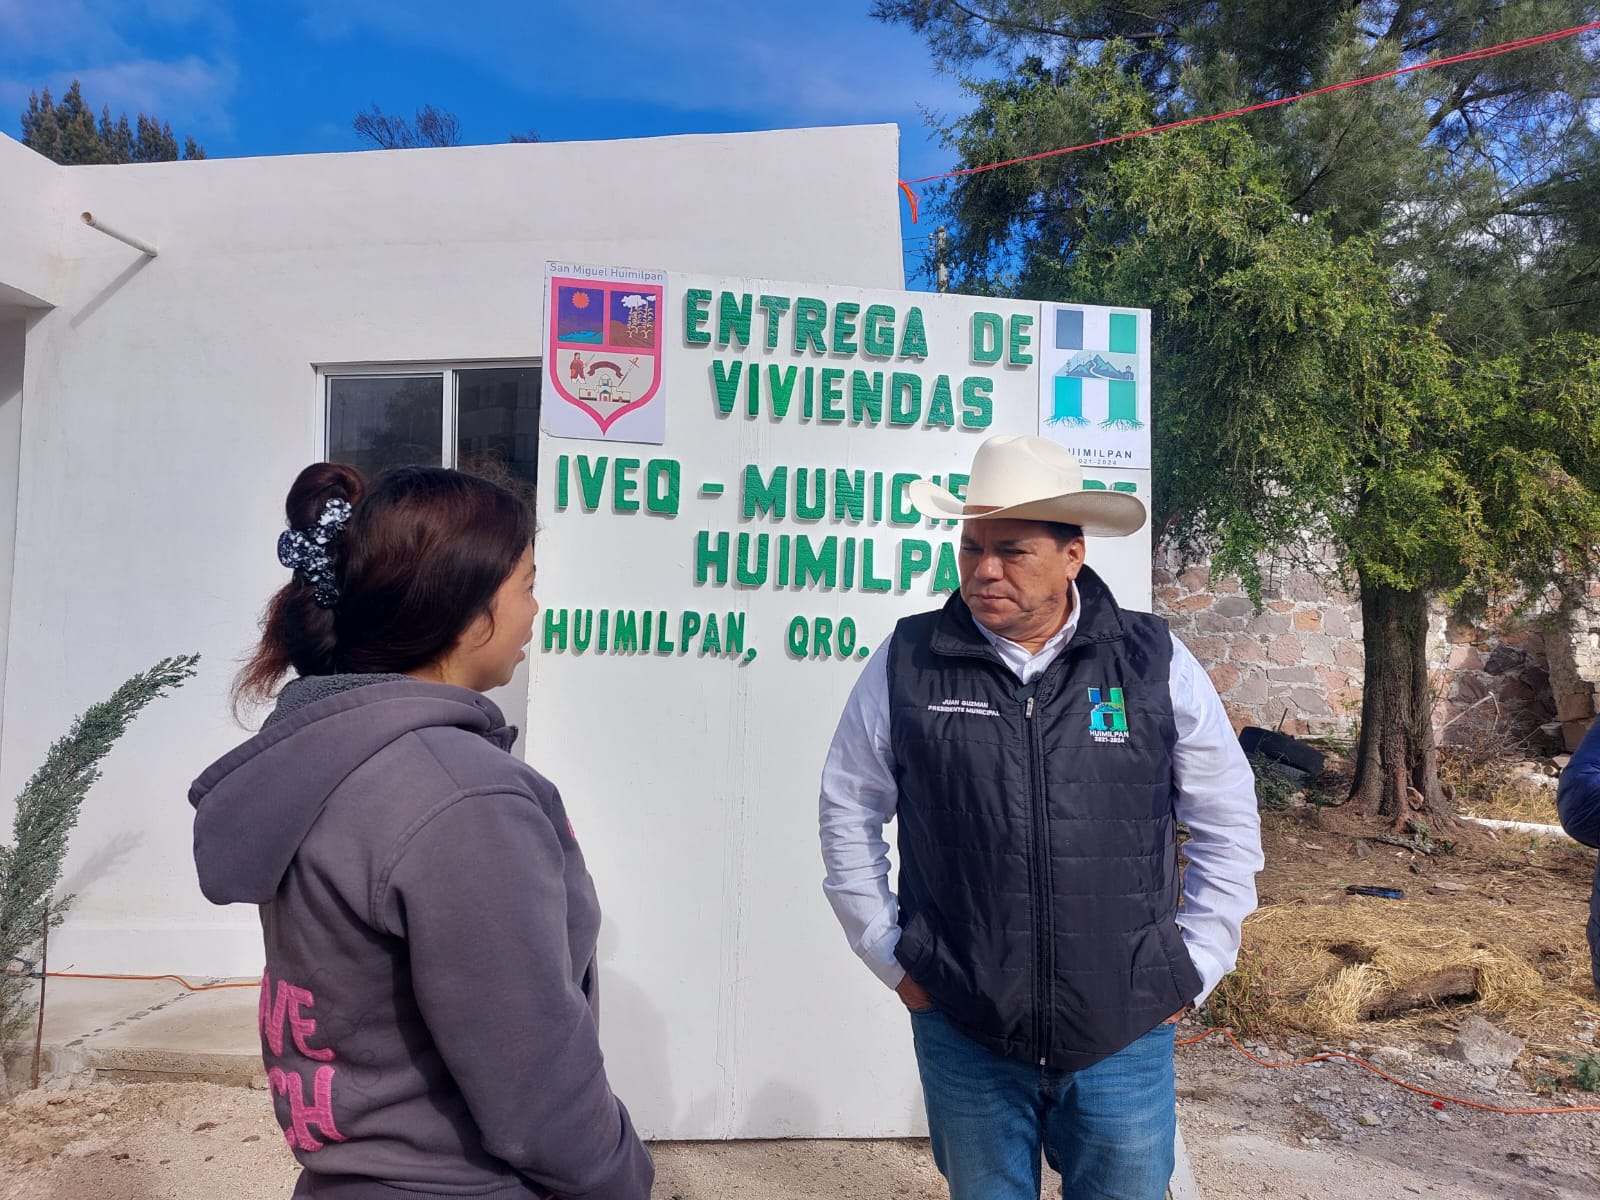 Se ha entregado un 50 por ciento de las viviendas comprometidas, indicó el alcalde de Huimilpan, Juan Guzmán Cabrera. Foto: Cortesía